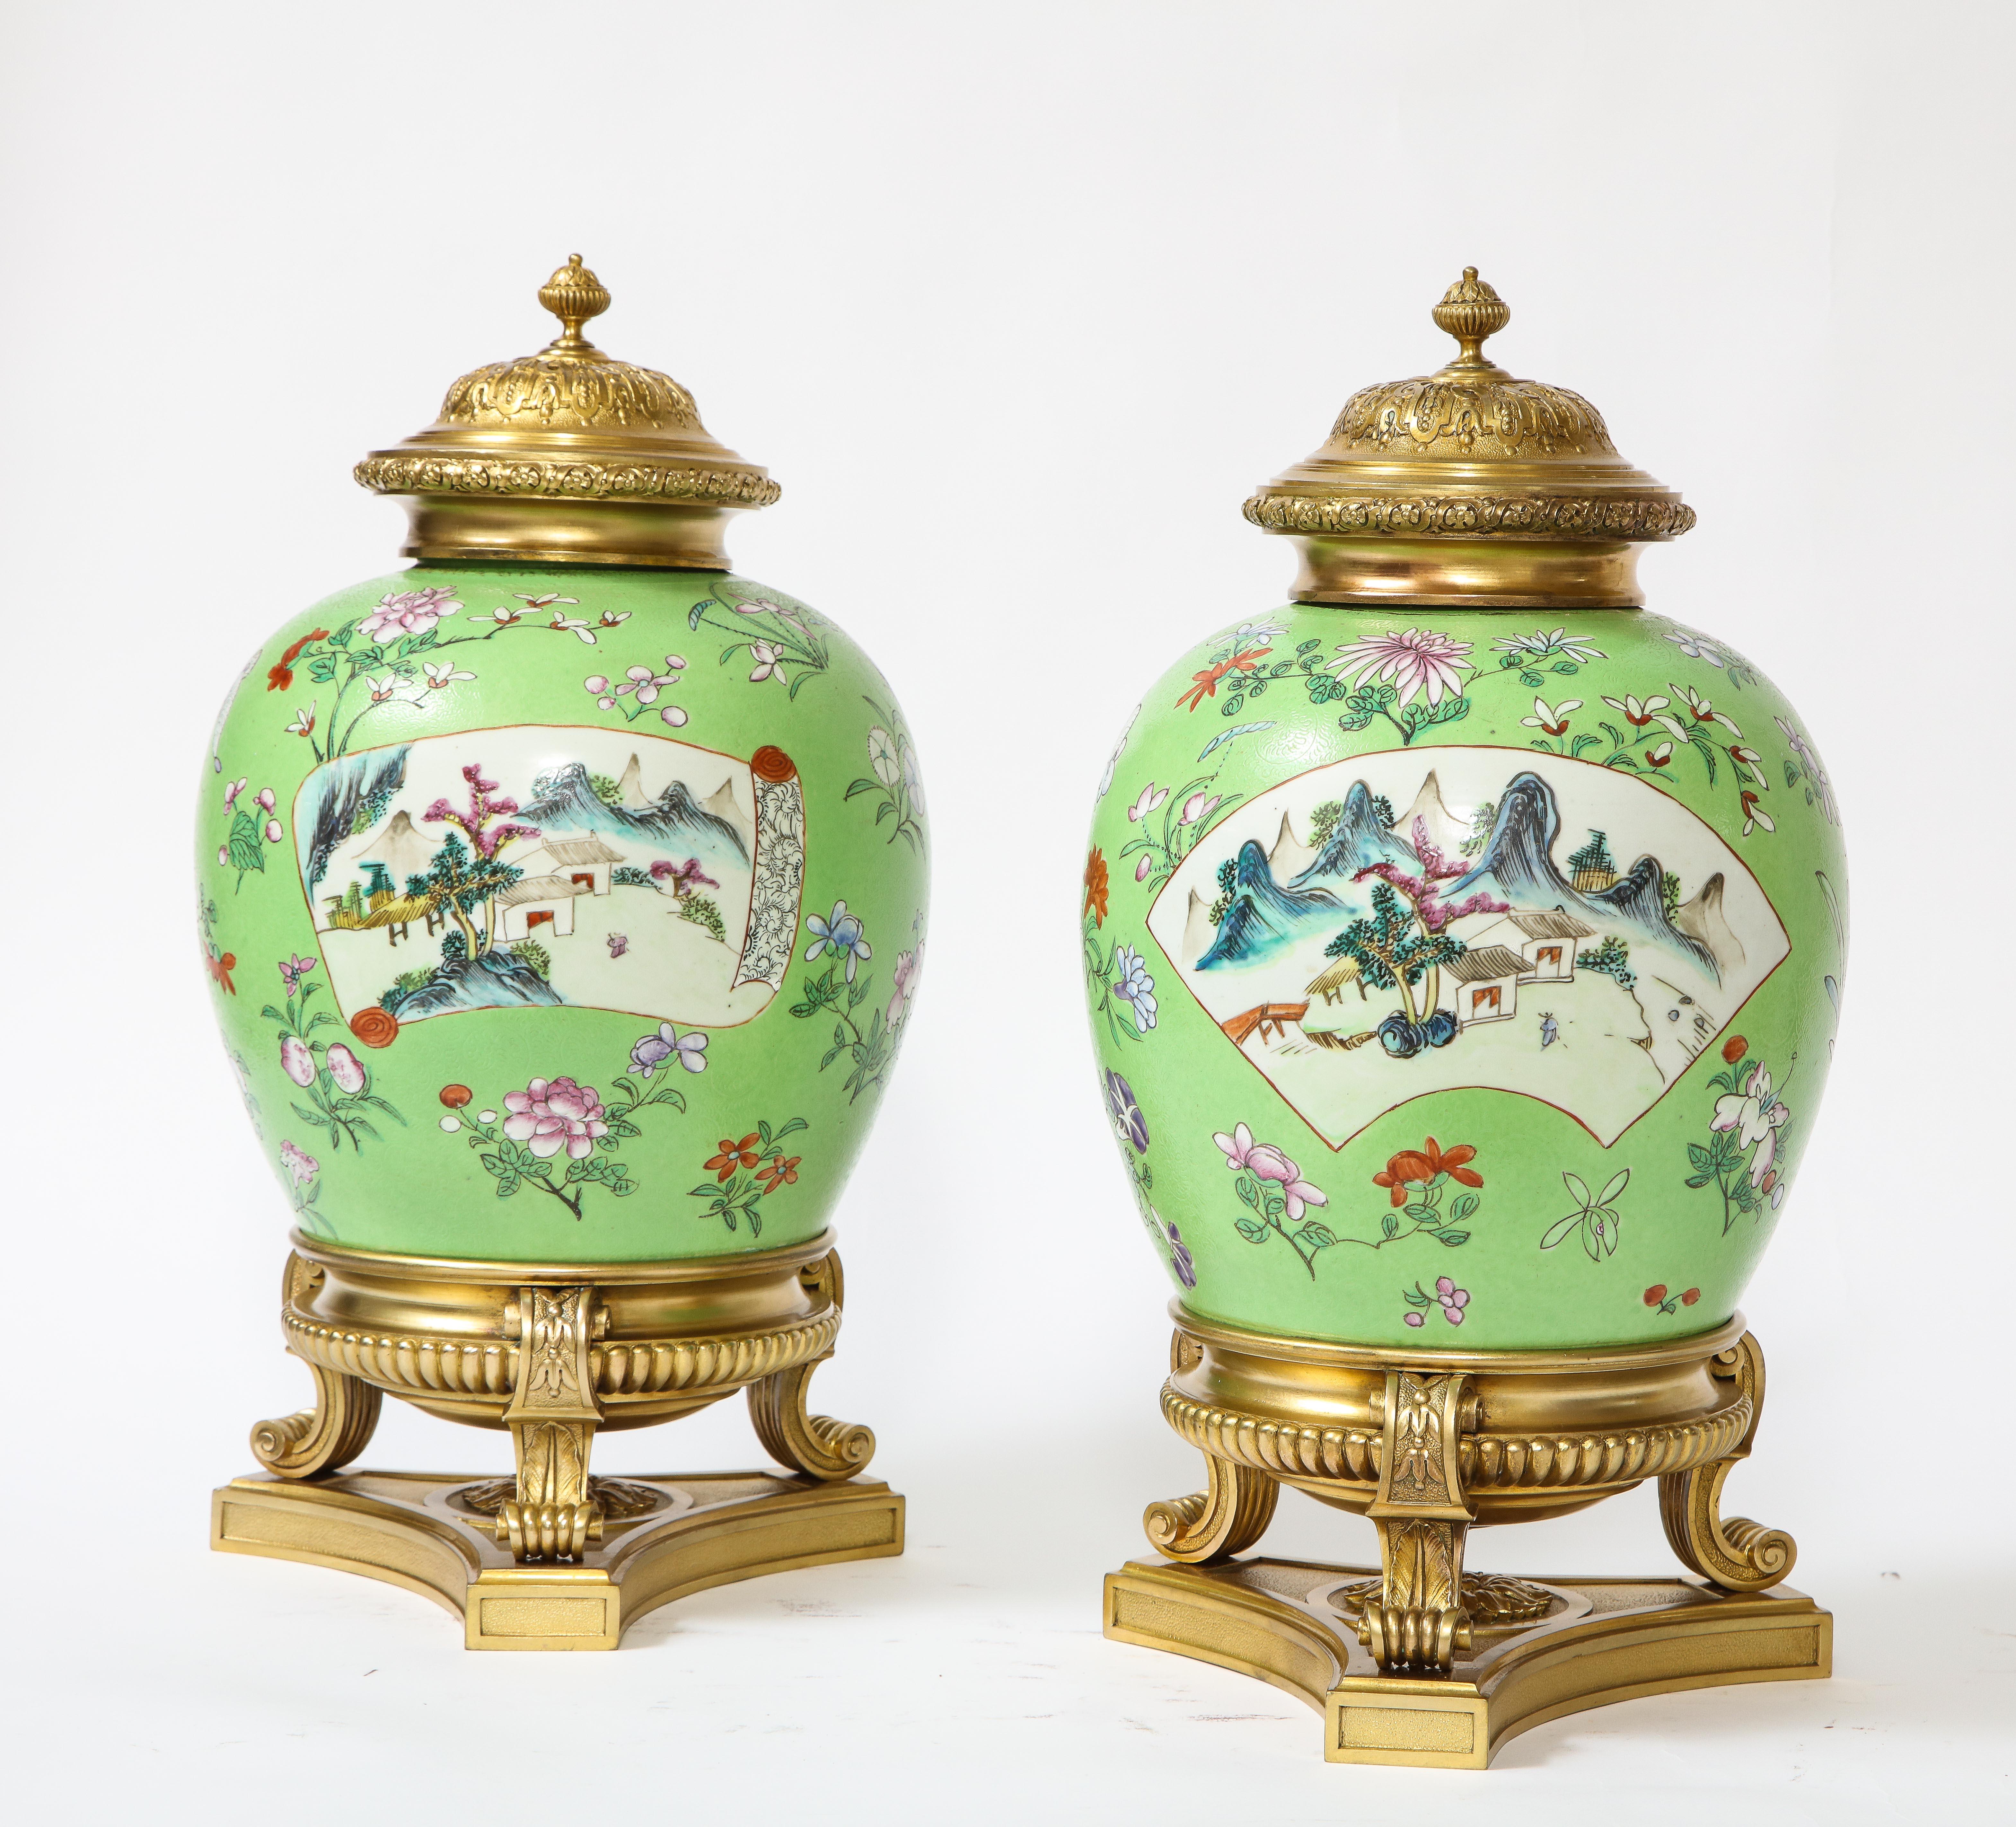 Ein fabelhaftes und sehr schönes Paar von Louis XVI Stil dore Bronze montiert chinesischen Famille Rose Porzellan, Sgraffito Boden bedeckt Vasen oder por pourries. Jedes Stück ist mit einer Reihe von schönen Emaillen auf einem vertikalen